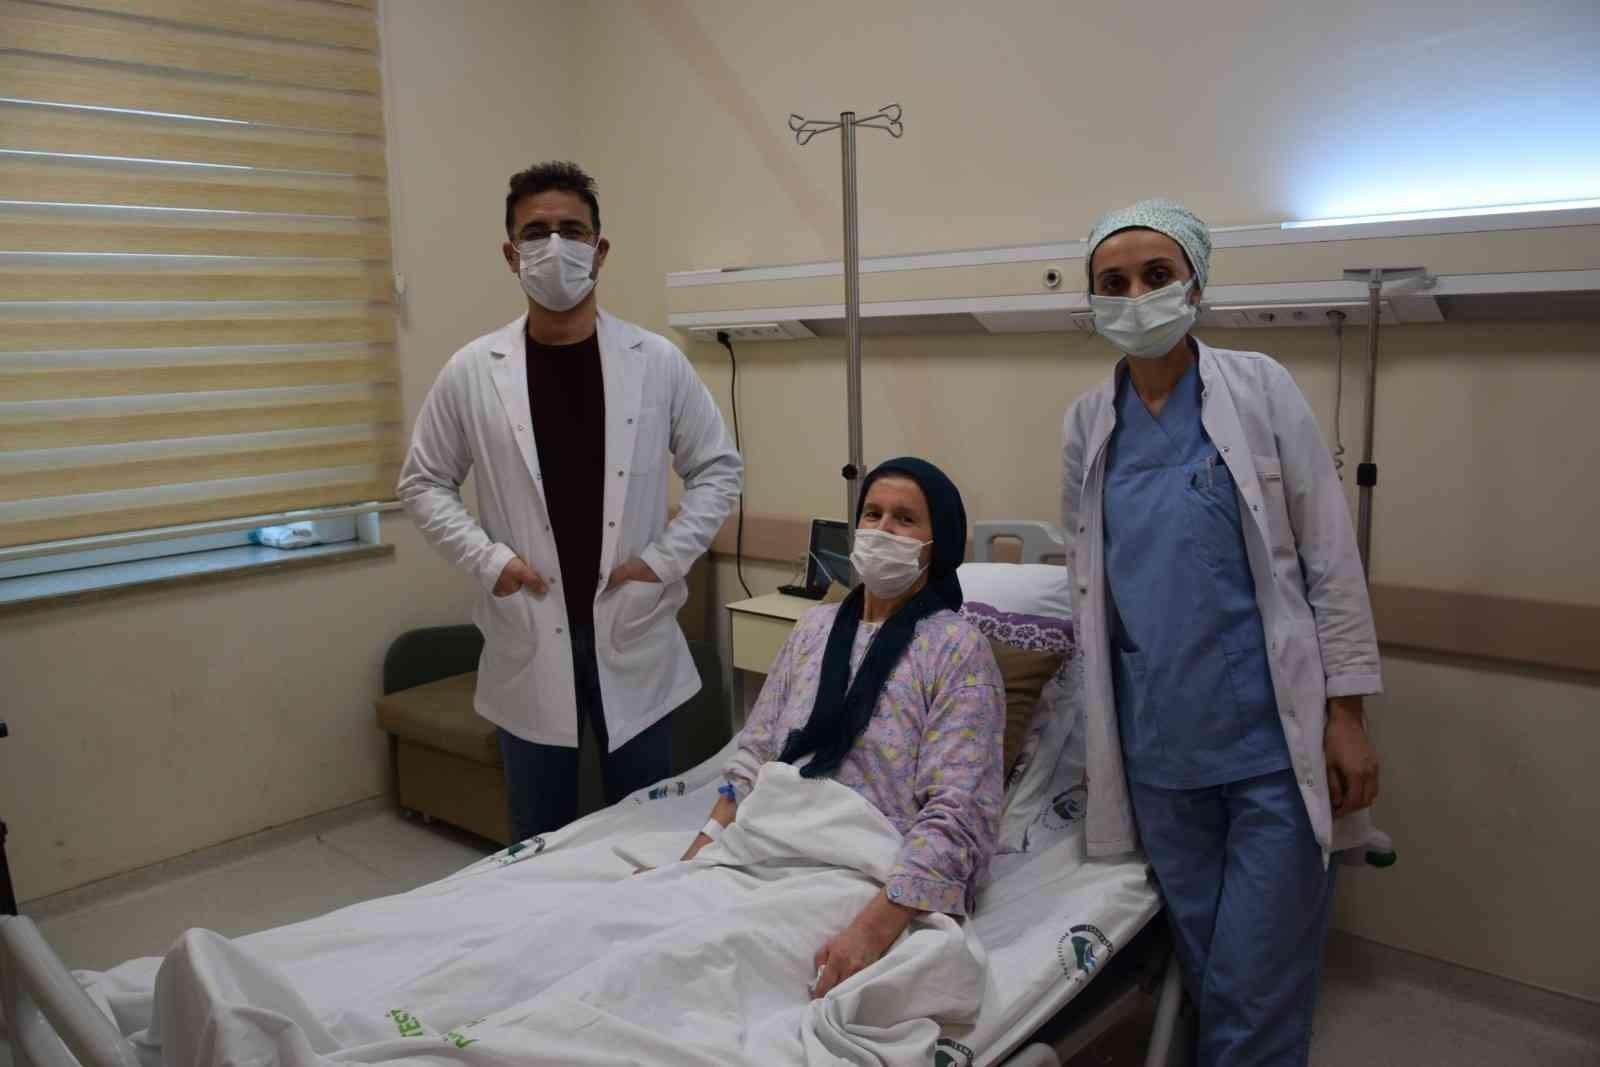 Şifayı, Düzce Üniversitesi Hastanesi’nde buldu #duzce